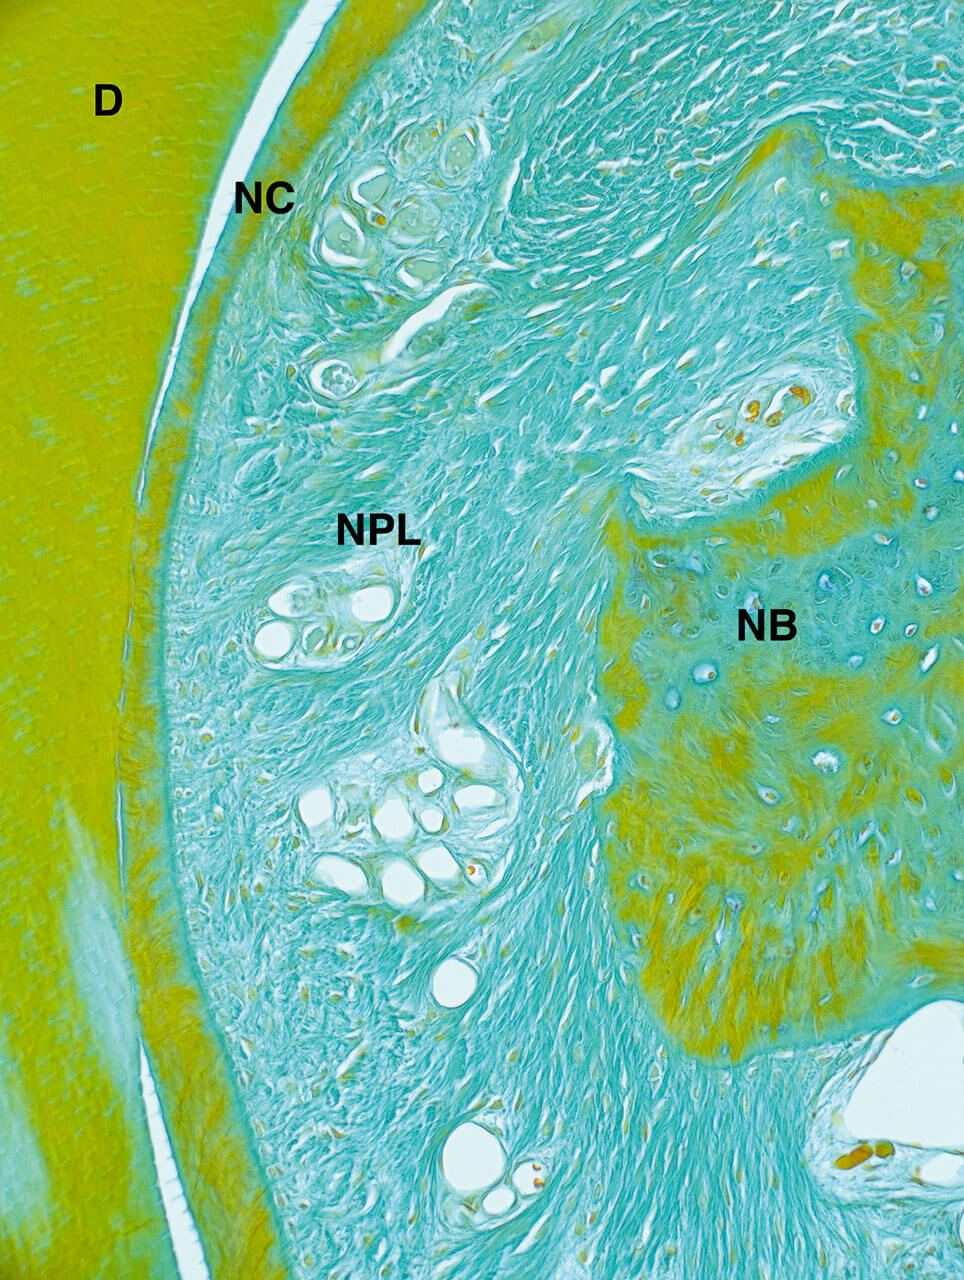 Abb. 2 Die Vergrößerung des in Abbildung 1 dargestellten Defekts verdeutlicht die Neubildung von Zement (NC), Desmodont (NPL) und Knochen (NB). 